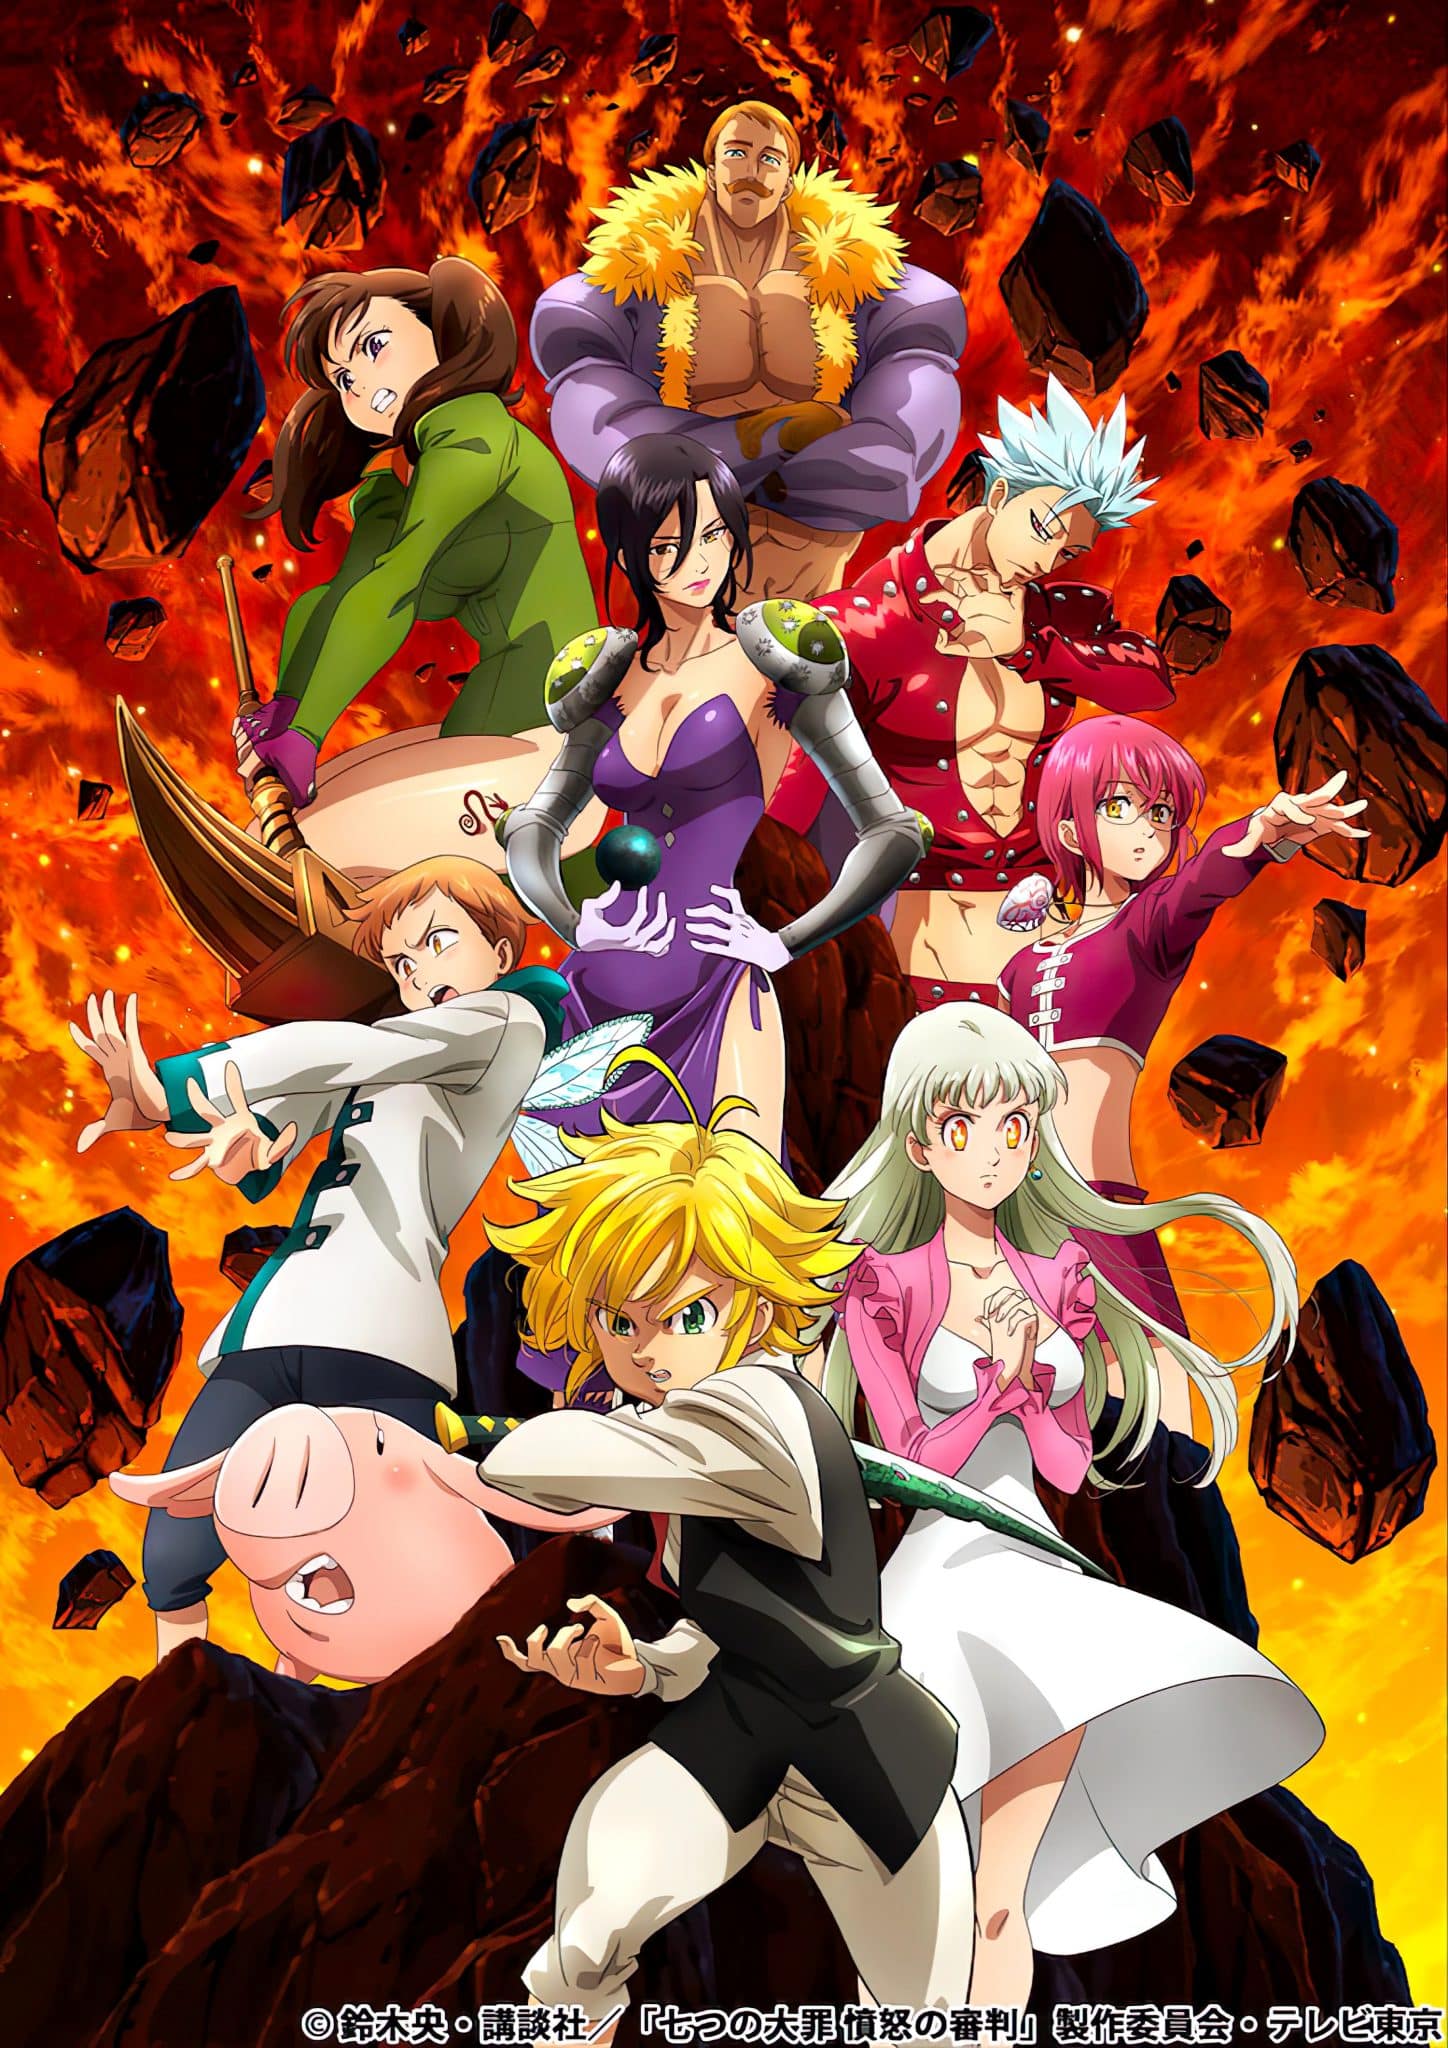 Annonce de la nouvelle date de sortie de l'anime The Seven Deadly Sins Saison 4